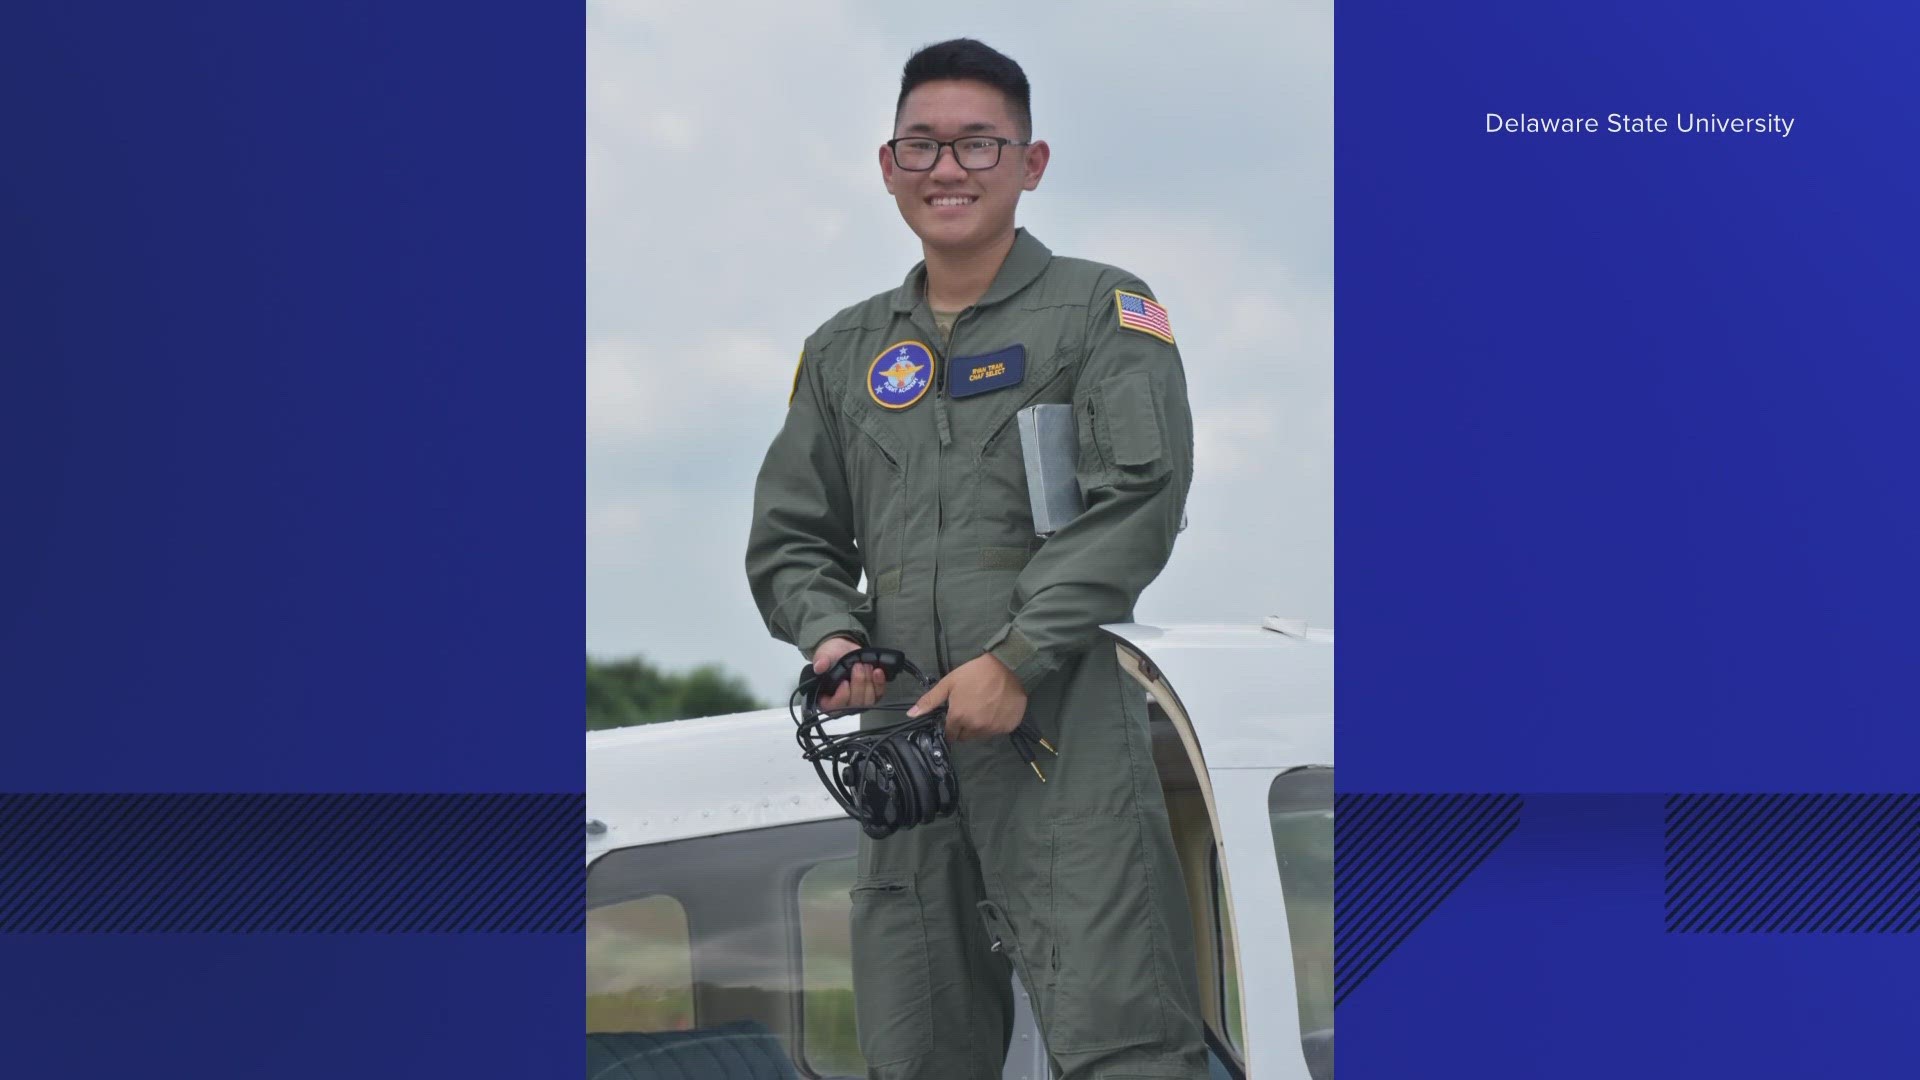 philippine air force pilot uniform